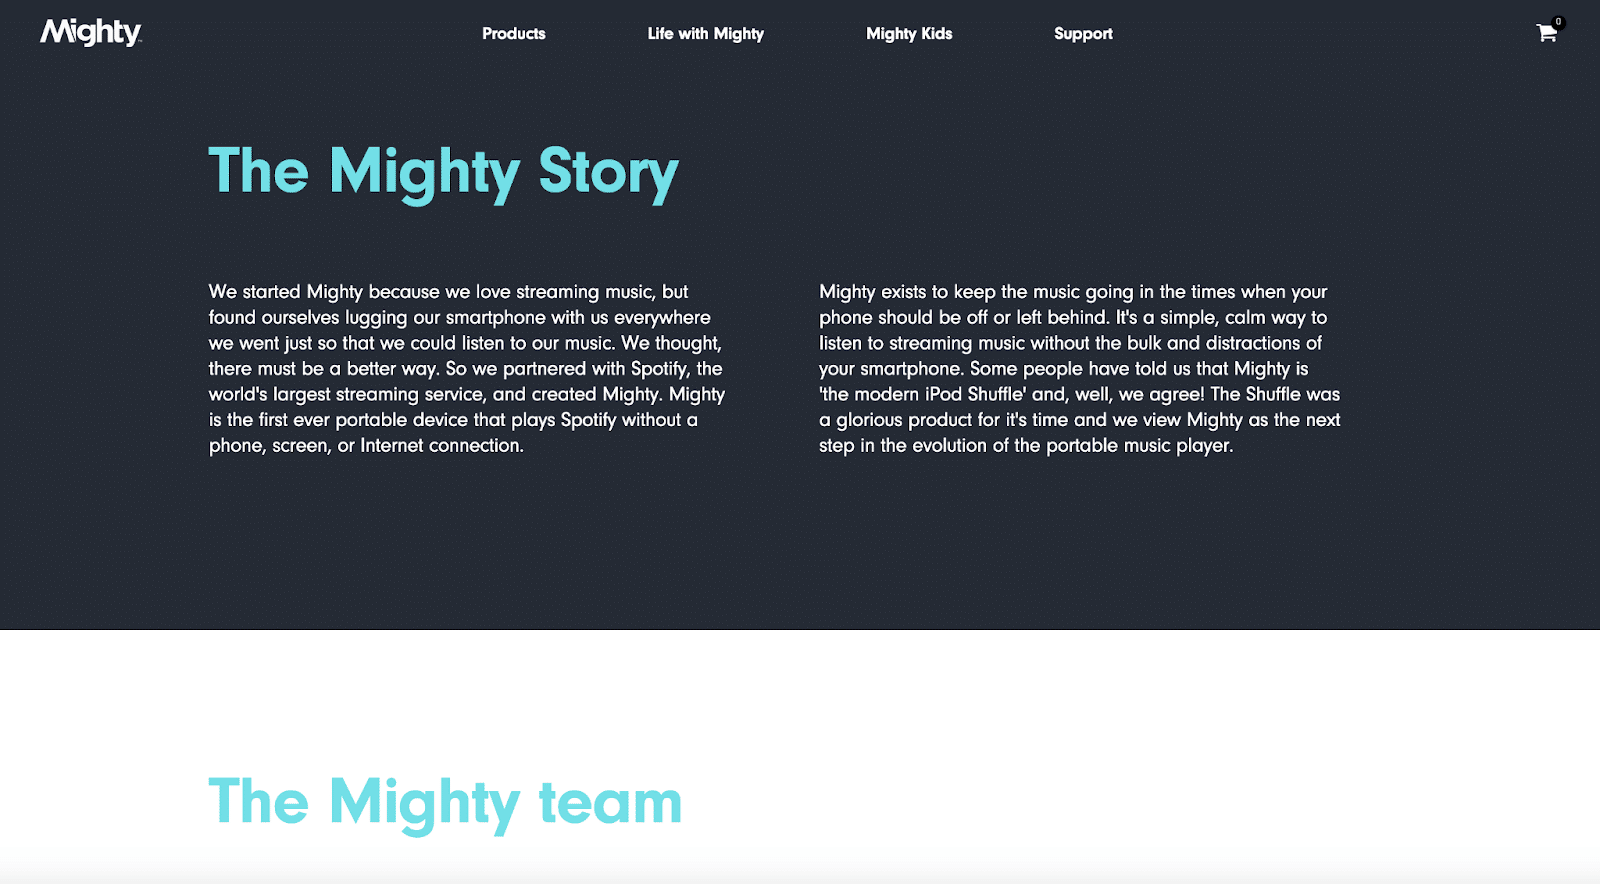 Page À propos de nous de Mighty Audio.